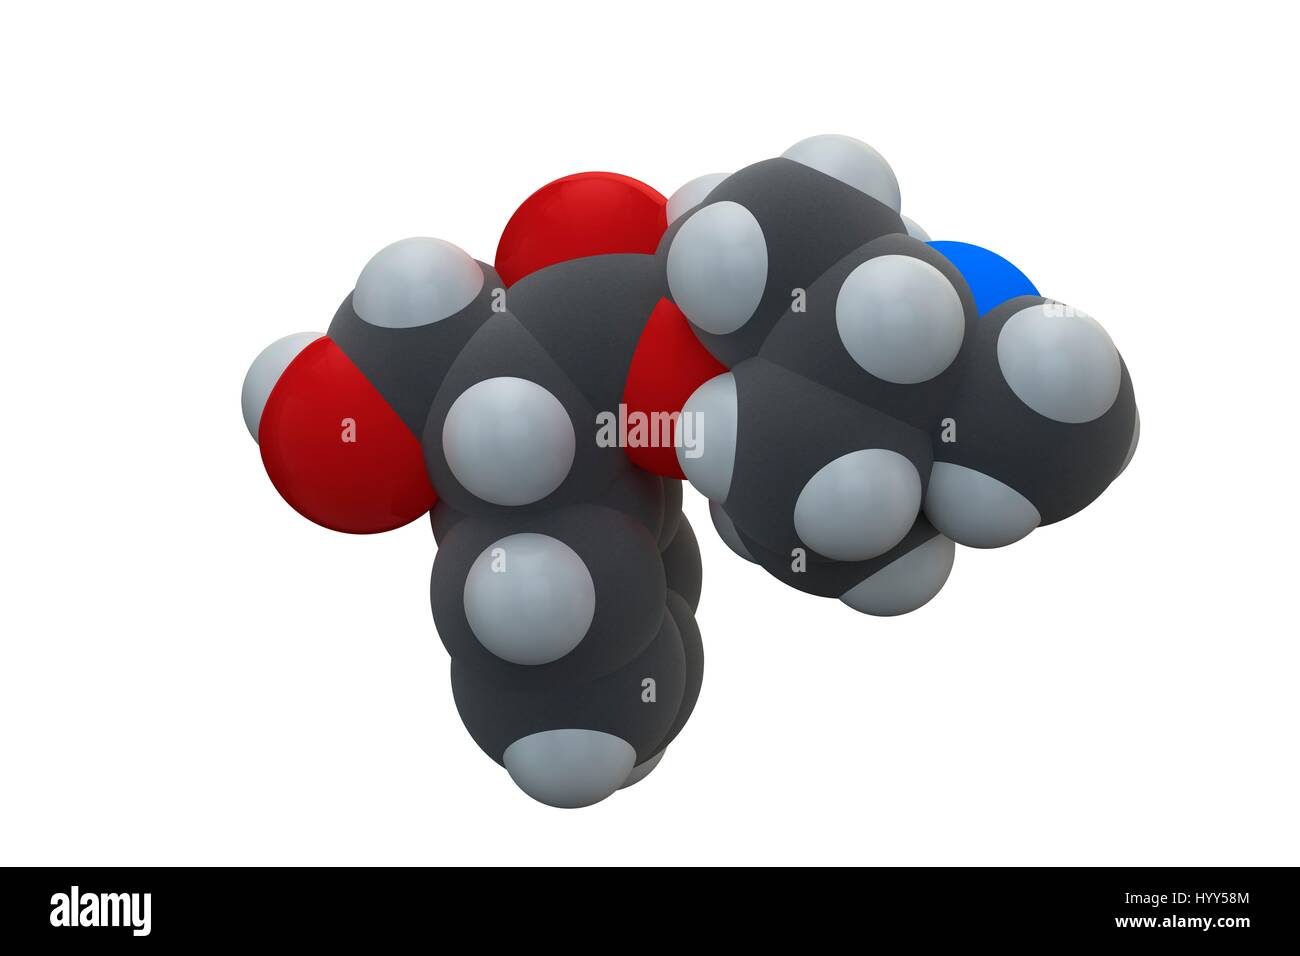 Atropin Tollkirsche (Atropa Belladonna) Alkaloid Molekül. Arzneimittel und Poison auch in Jimson Unkraut (Datura Stramonium) und Alraune (Mandragora Officinarum) gefunden. Chemische Formel ist C17H23NO3. Atome werden als Kugeln dargestellt: Kohlenstoff (grau), Wasserstoff (weiß), Stickstoff (blau), Sauerstoff (rot). Abbildung. Stockfoto